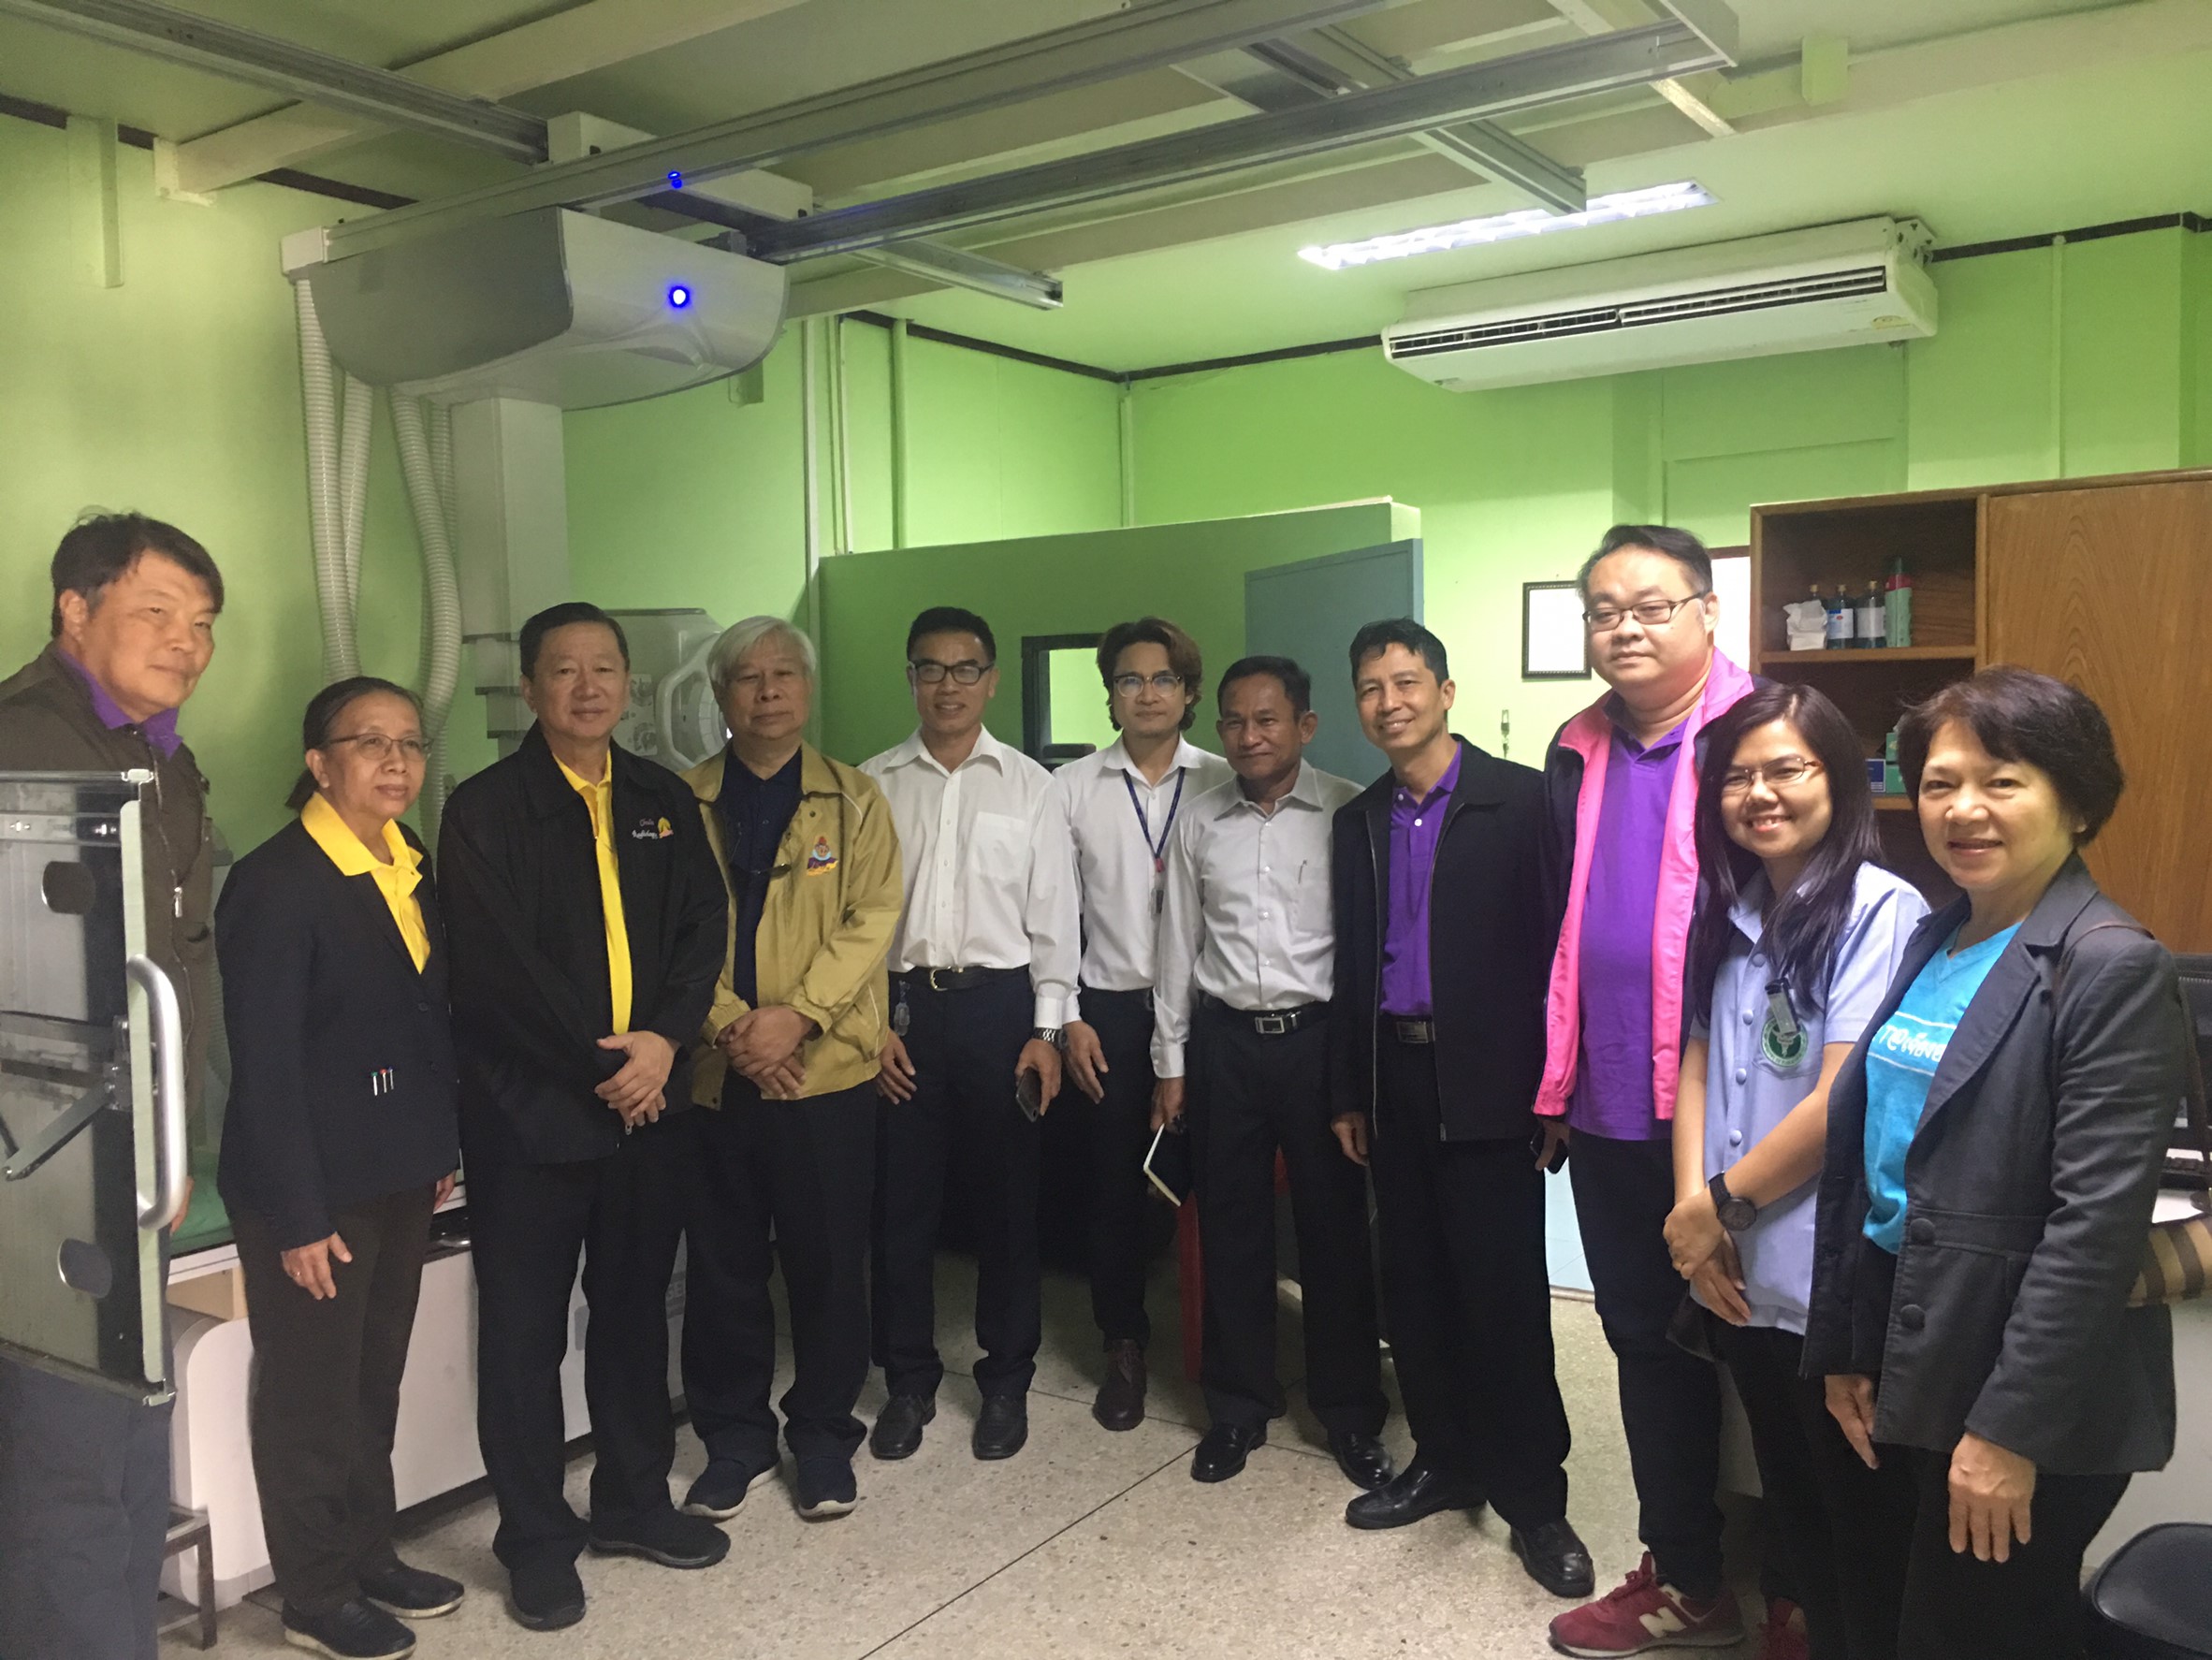 ประชุมวิชาการร่วมกับรังสีการแพทย์แห่งประเทศไทย ครั้งที่17 27-29 พ.ย. - พร้อมเข้าเยี่ยมและให้กำลังใจหน่วยงานรังสีวิทยาในพื้นที่จังหวัดอุบลราชธานีระหว่างวันที่ 25-26 พฤศจิกายน 2562 81